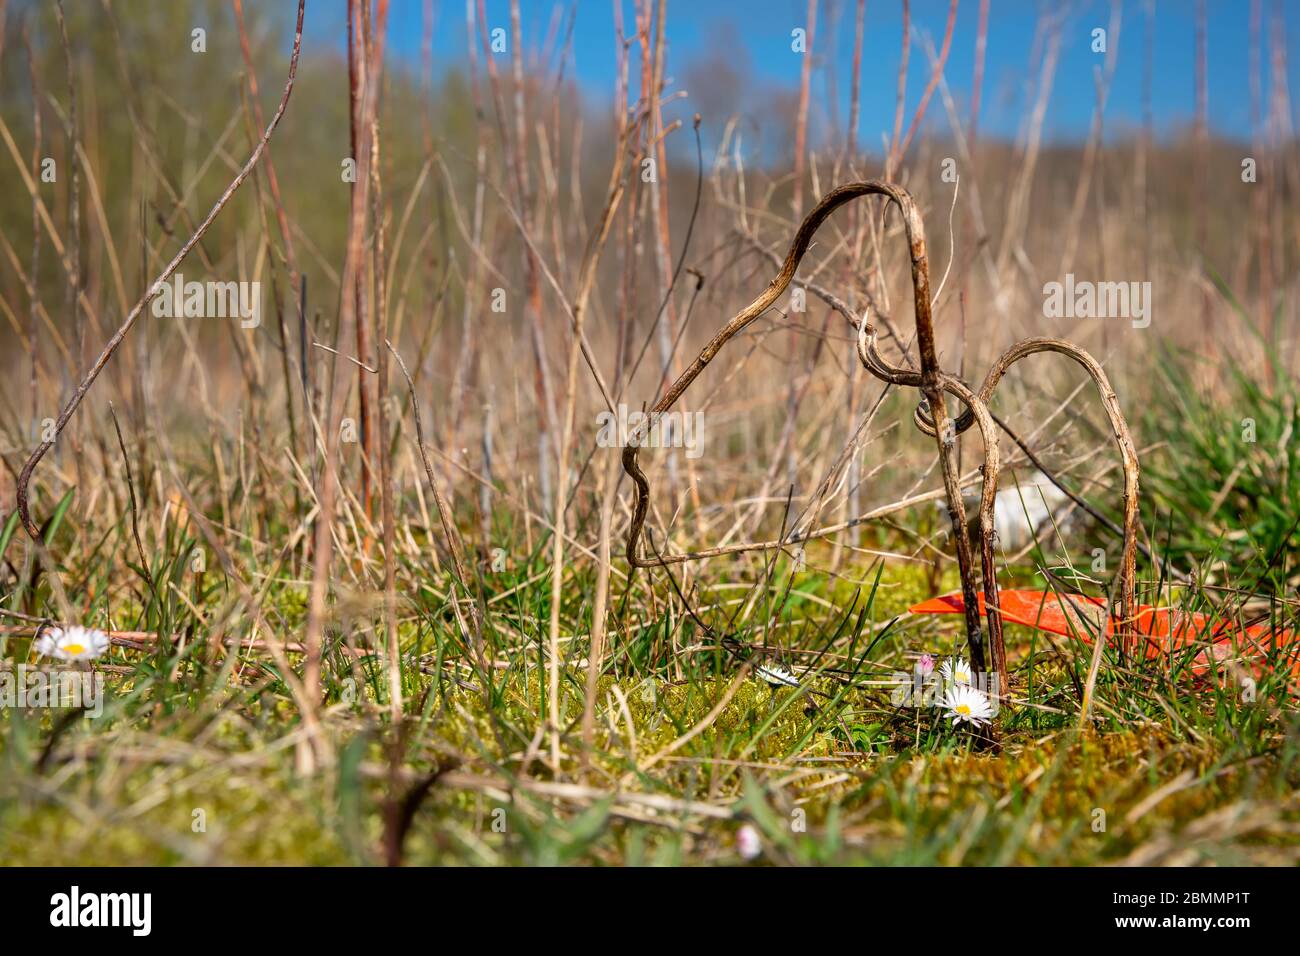 Gänseblümchen oder bellis perennis wachsen neben Plastikmüll auf einer überdachten Deponie in Bad Iburg im Nordwesten Deutschlands. Stockfoto